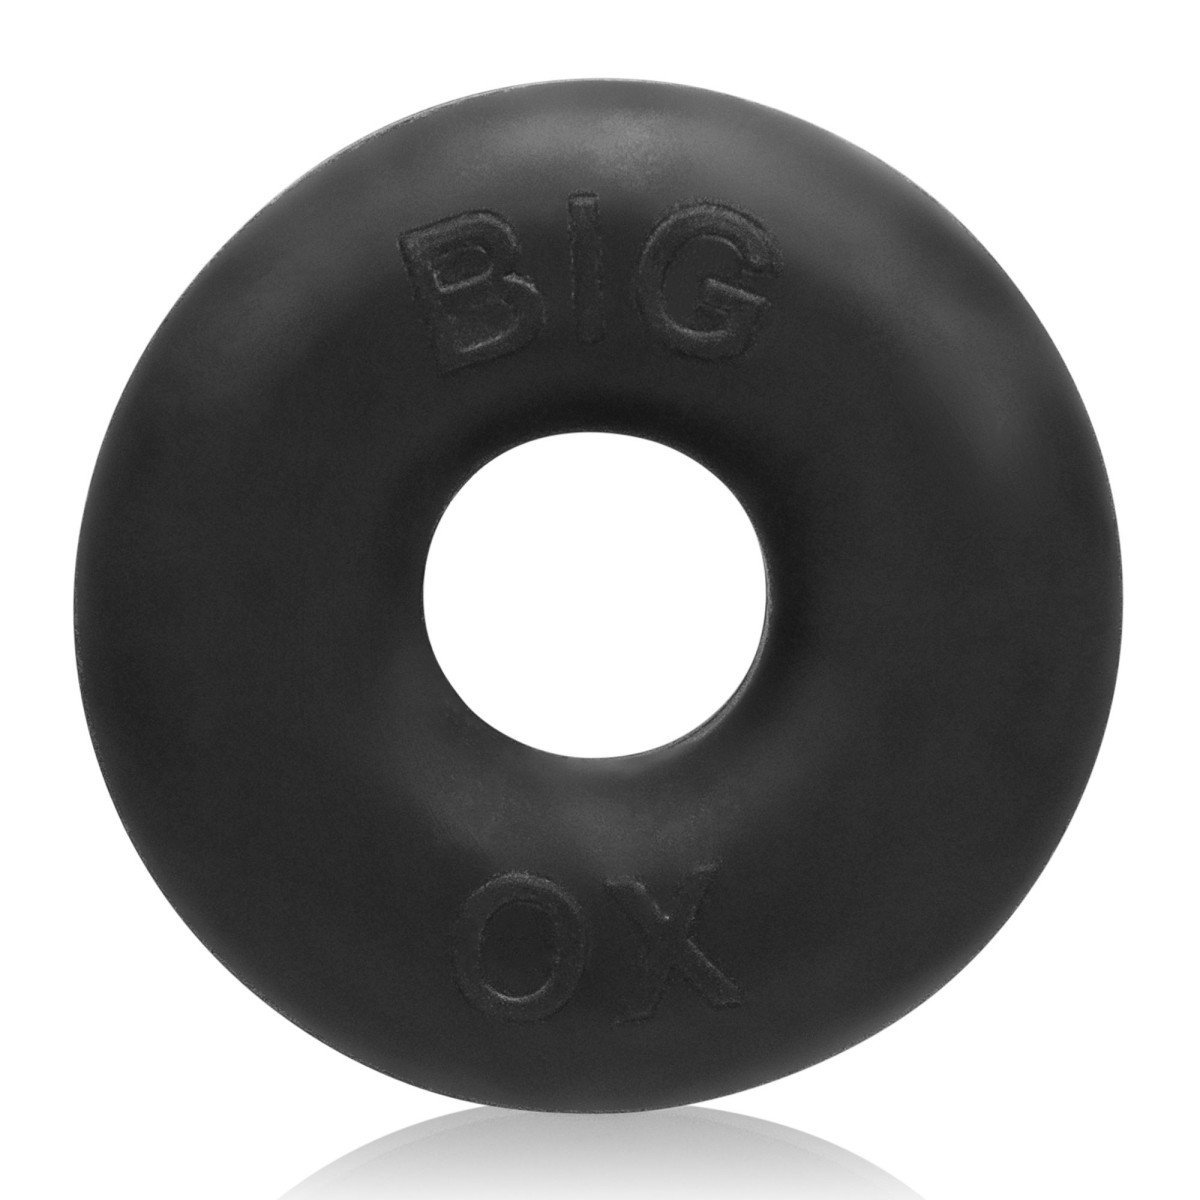 Veľký erekčný krúžok Oxballs Big Ox čierny, silný masívny erekčný krúžok / naťahovač semenníkov